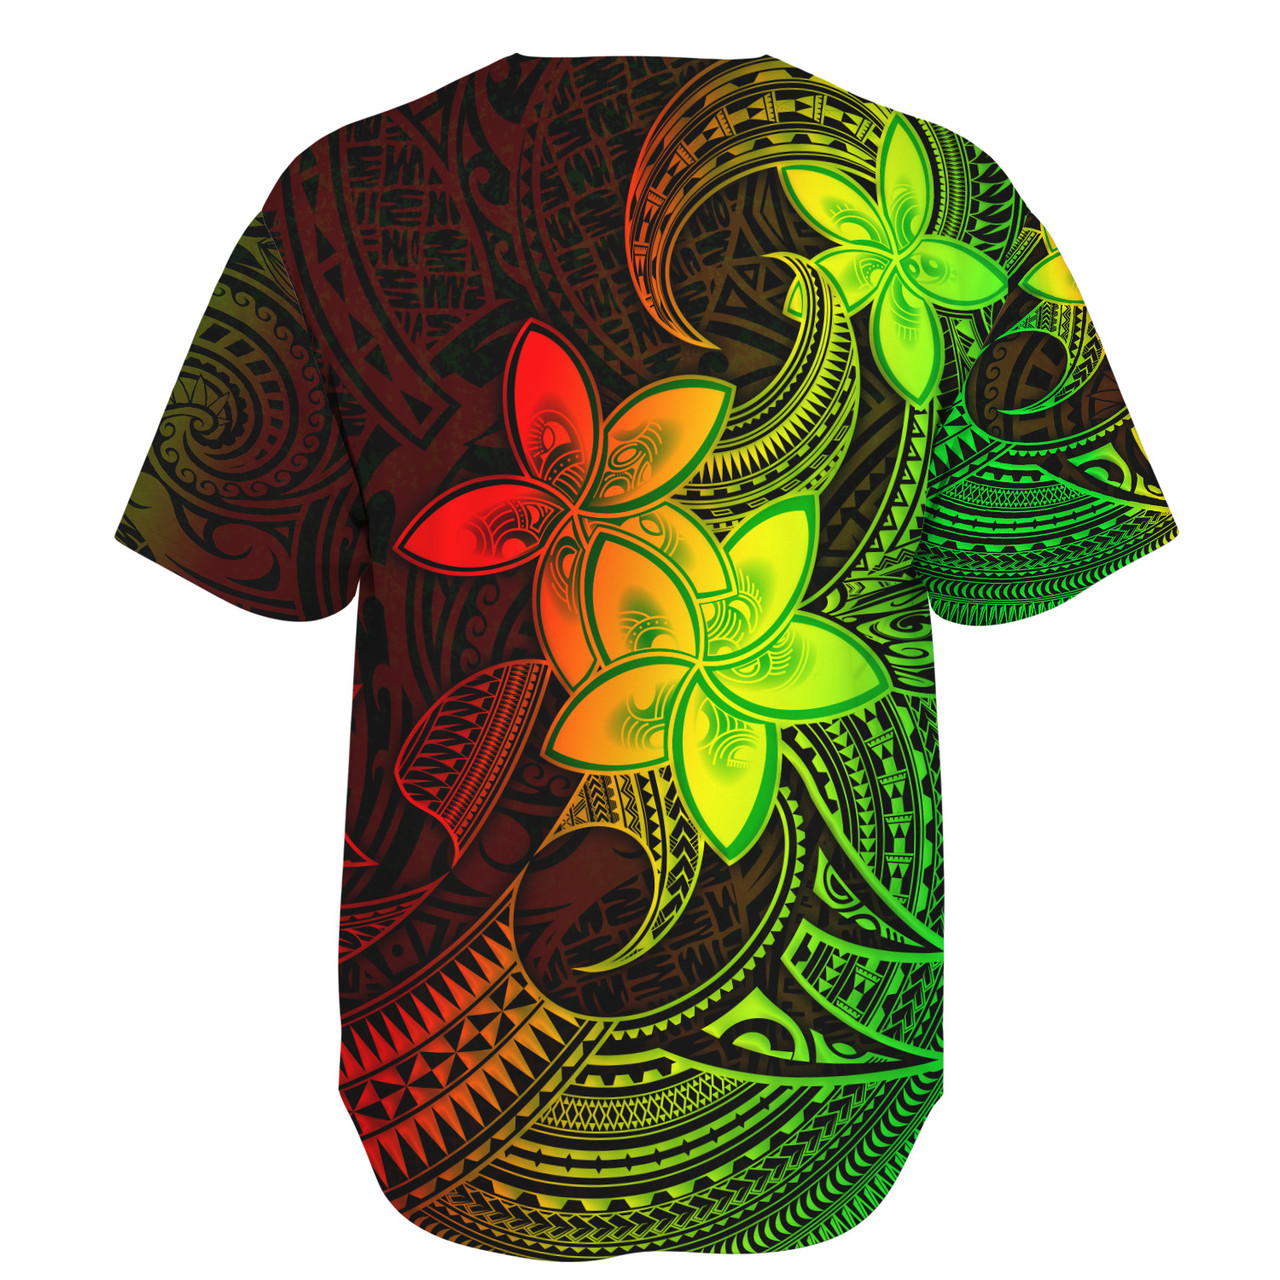 Tahiti Baseball Shirt Plumeria Flowers Vintage Style Reggae Colors